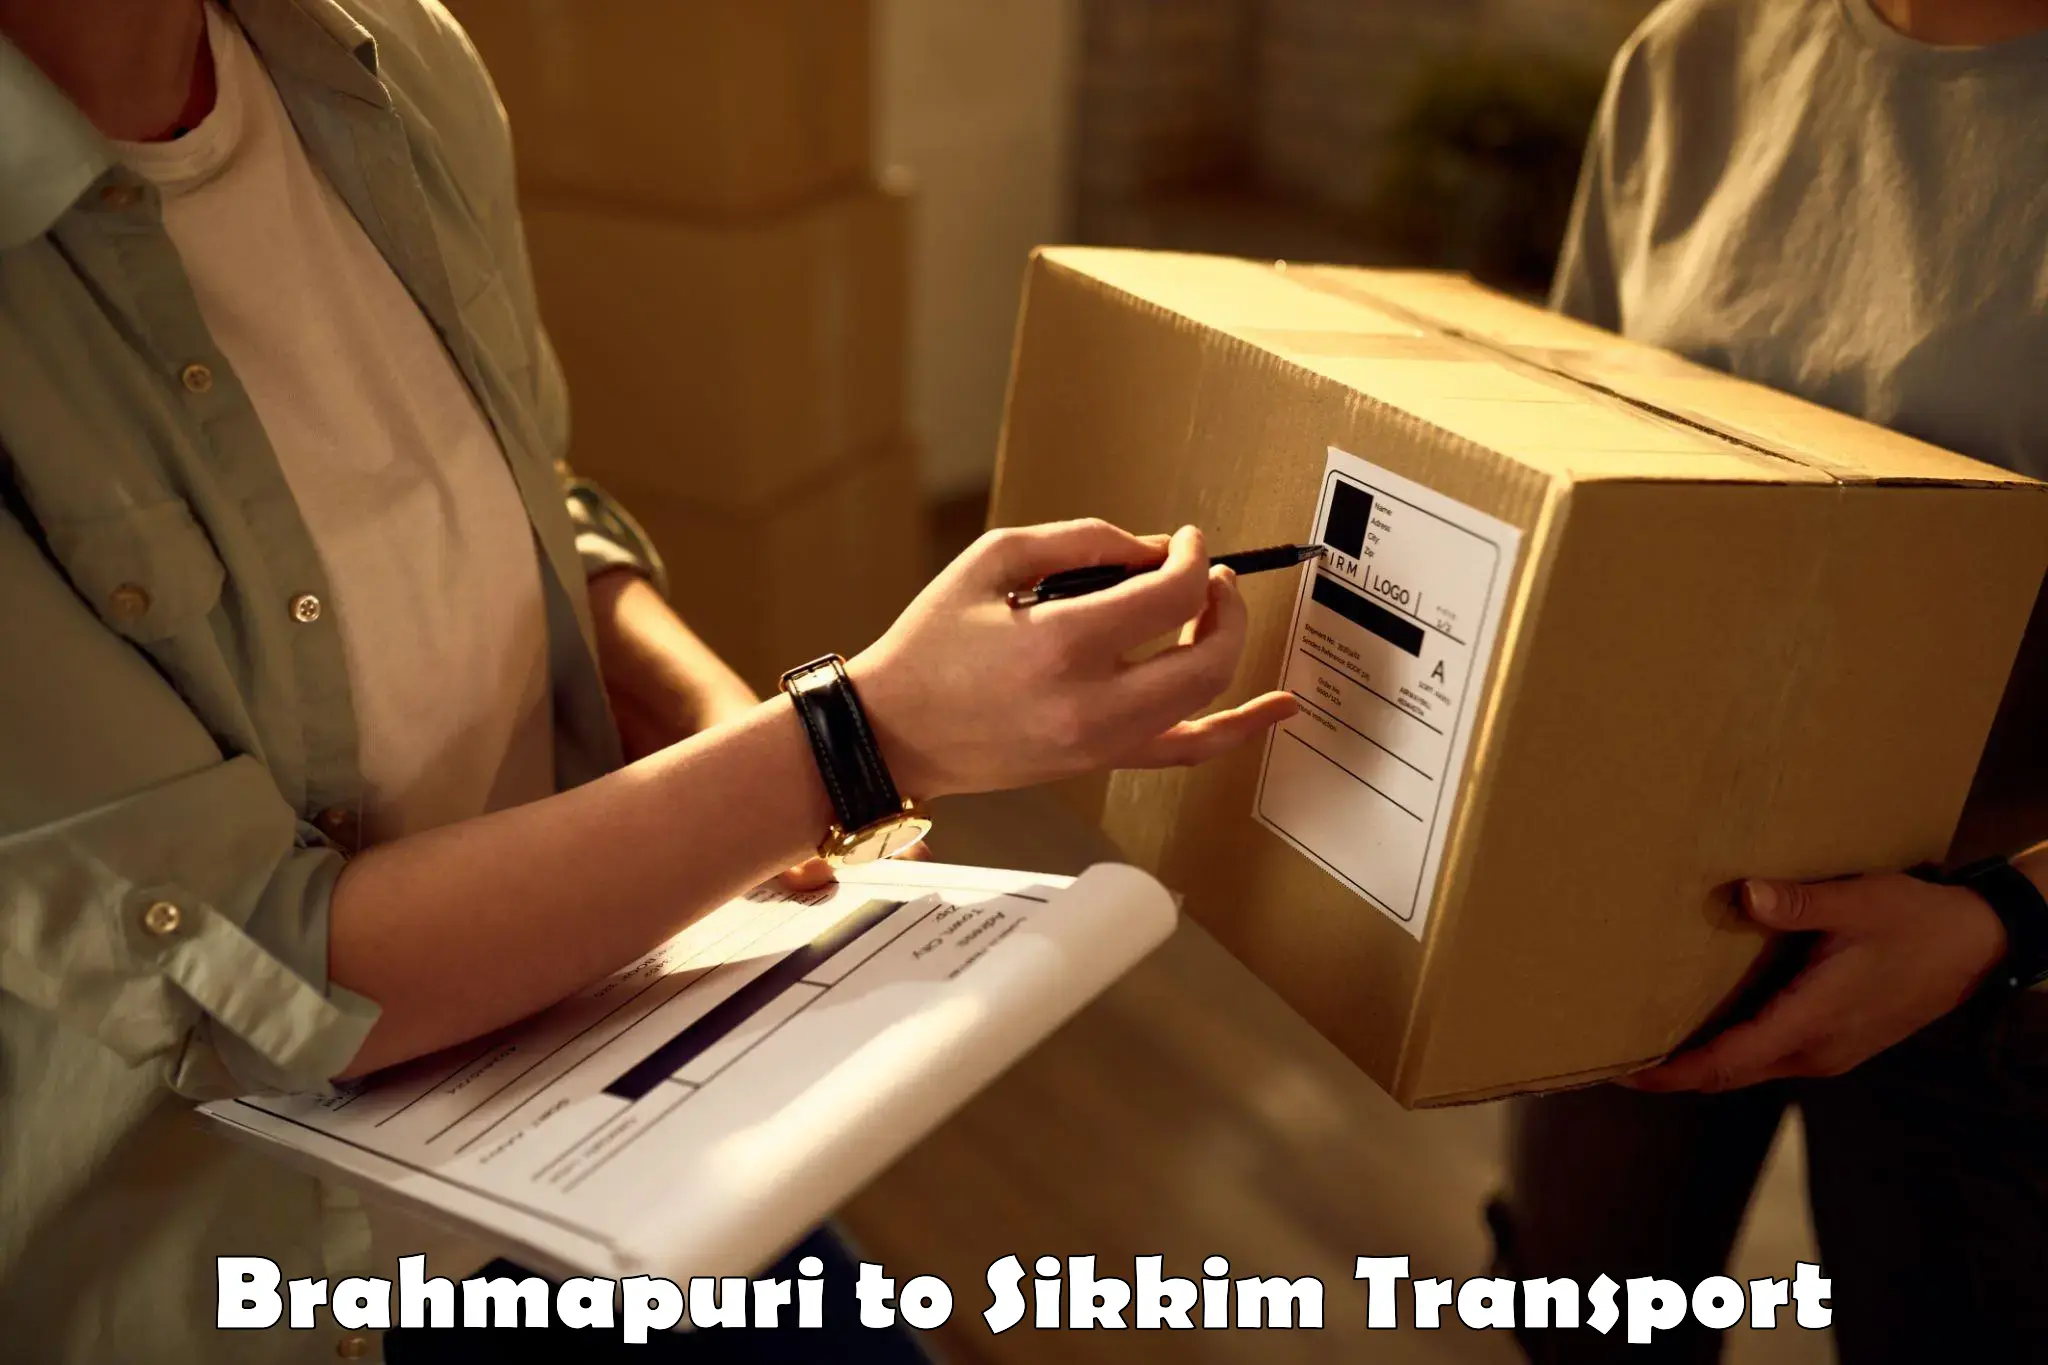 Delivery service Brahmapuri to Sikkim